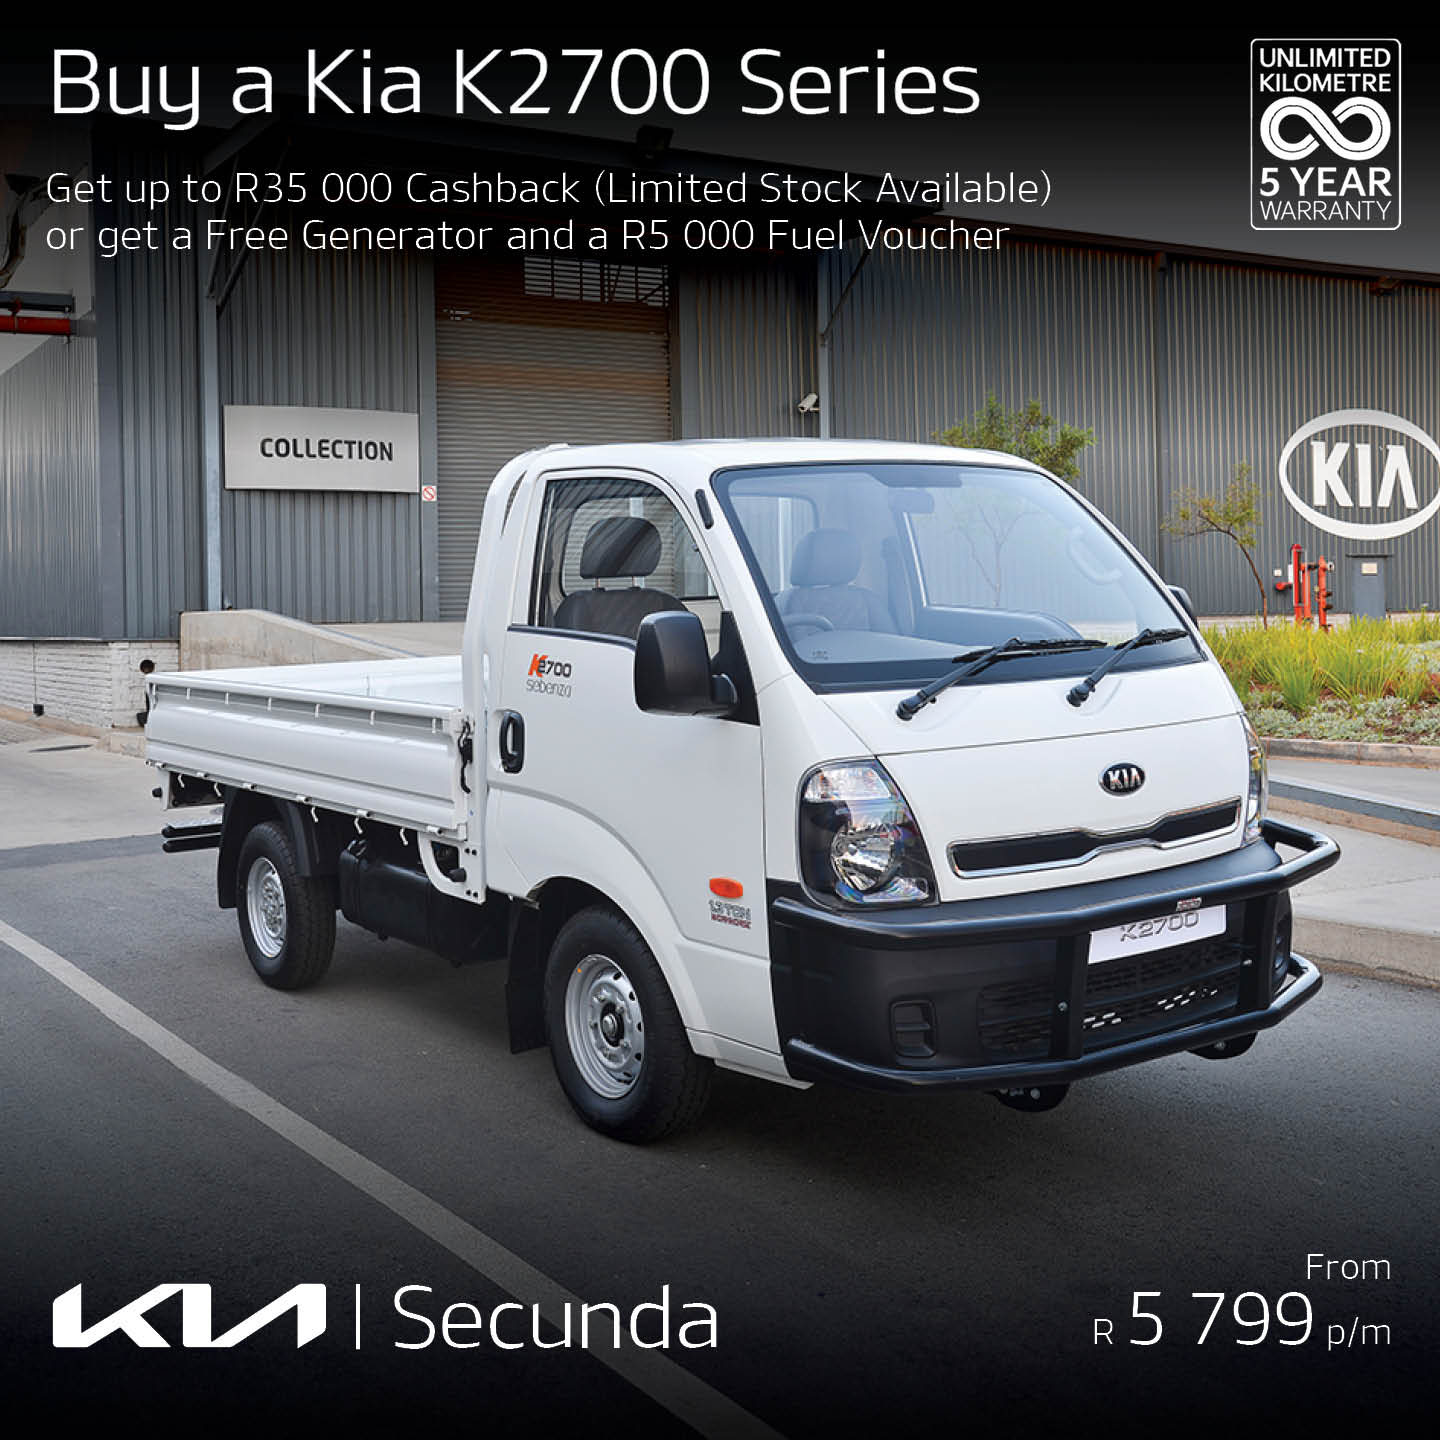 Buy a K2700 Series image from Eastvaal Motors